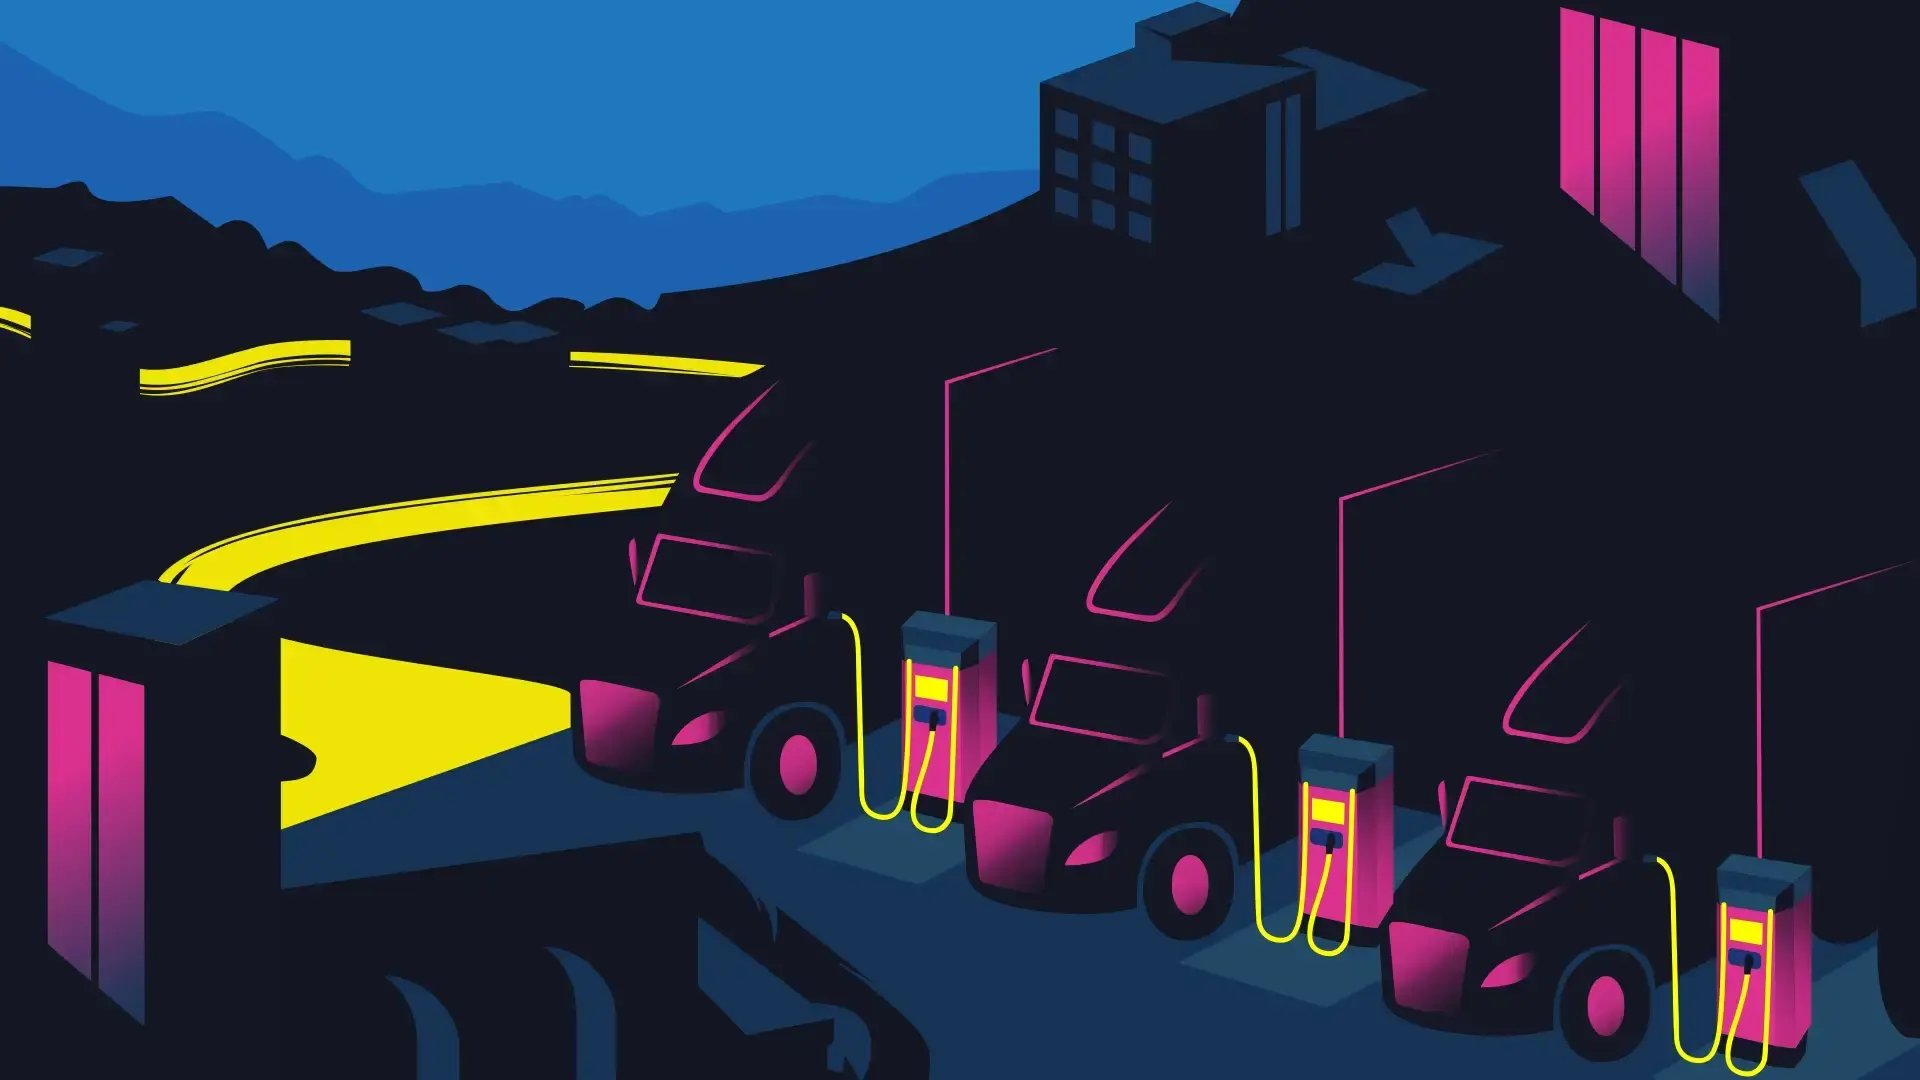 Illustration av tunga elektrifierade lastbilar som laddar i en stad i neonljus